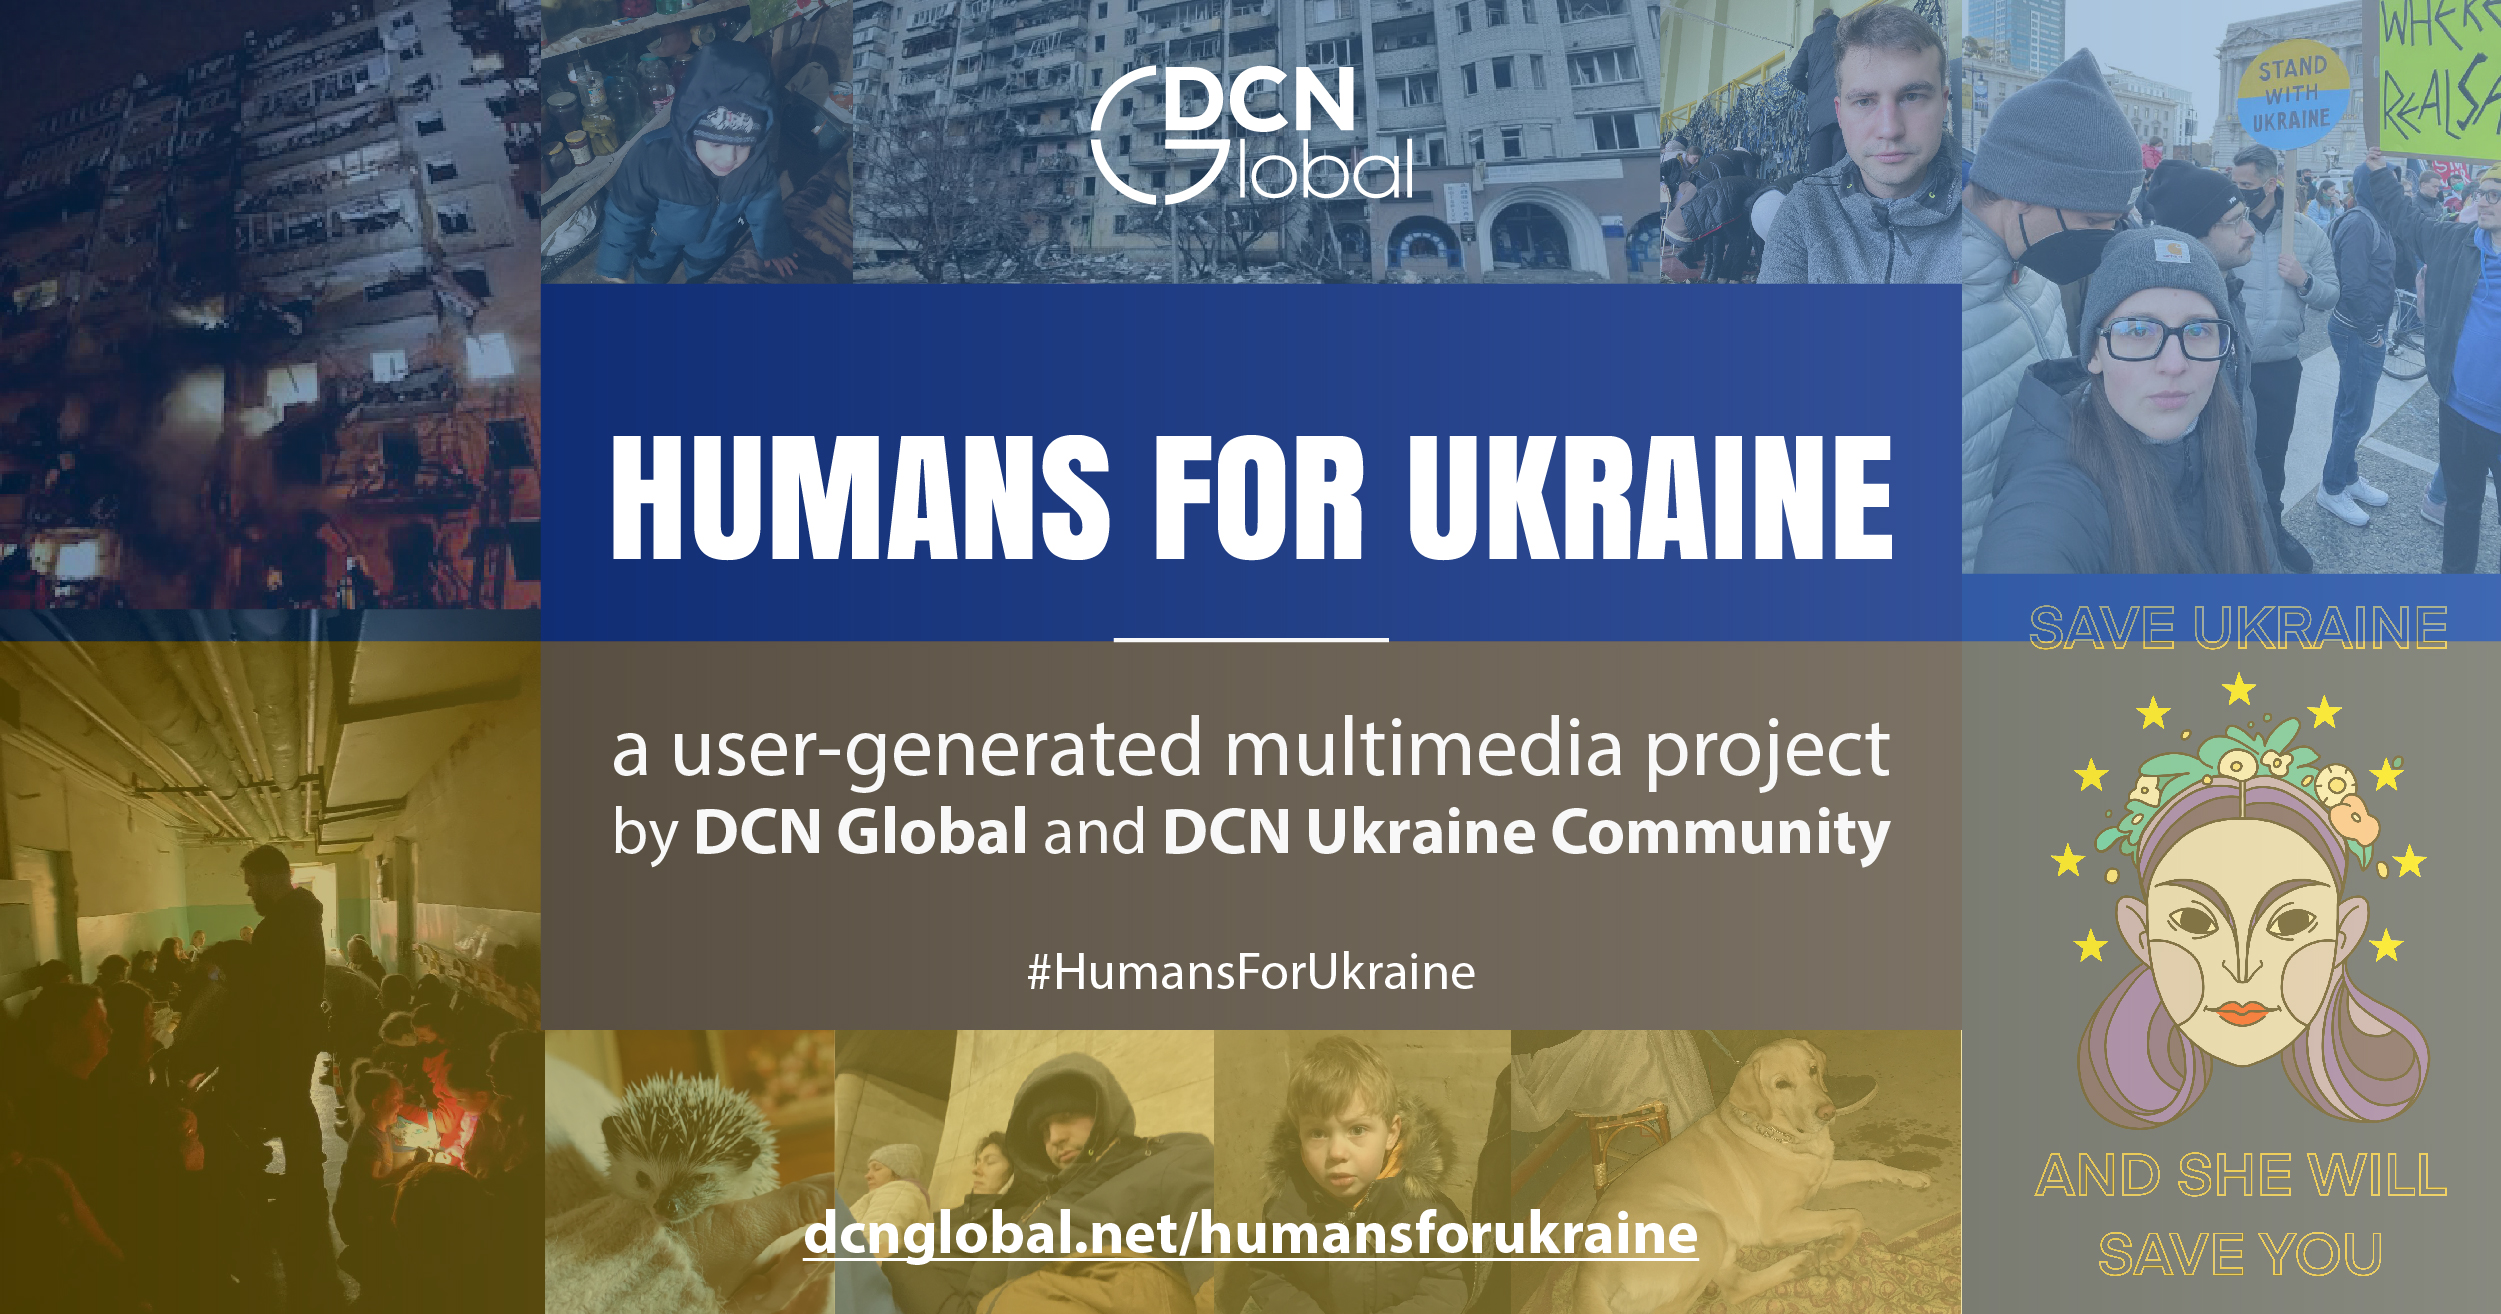 «Humans for Ukraine», la guerra raccontata dalla società civile ucraina